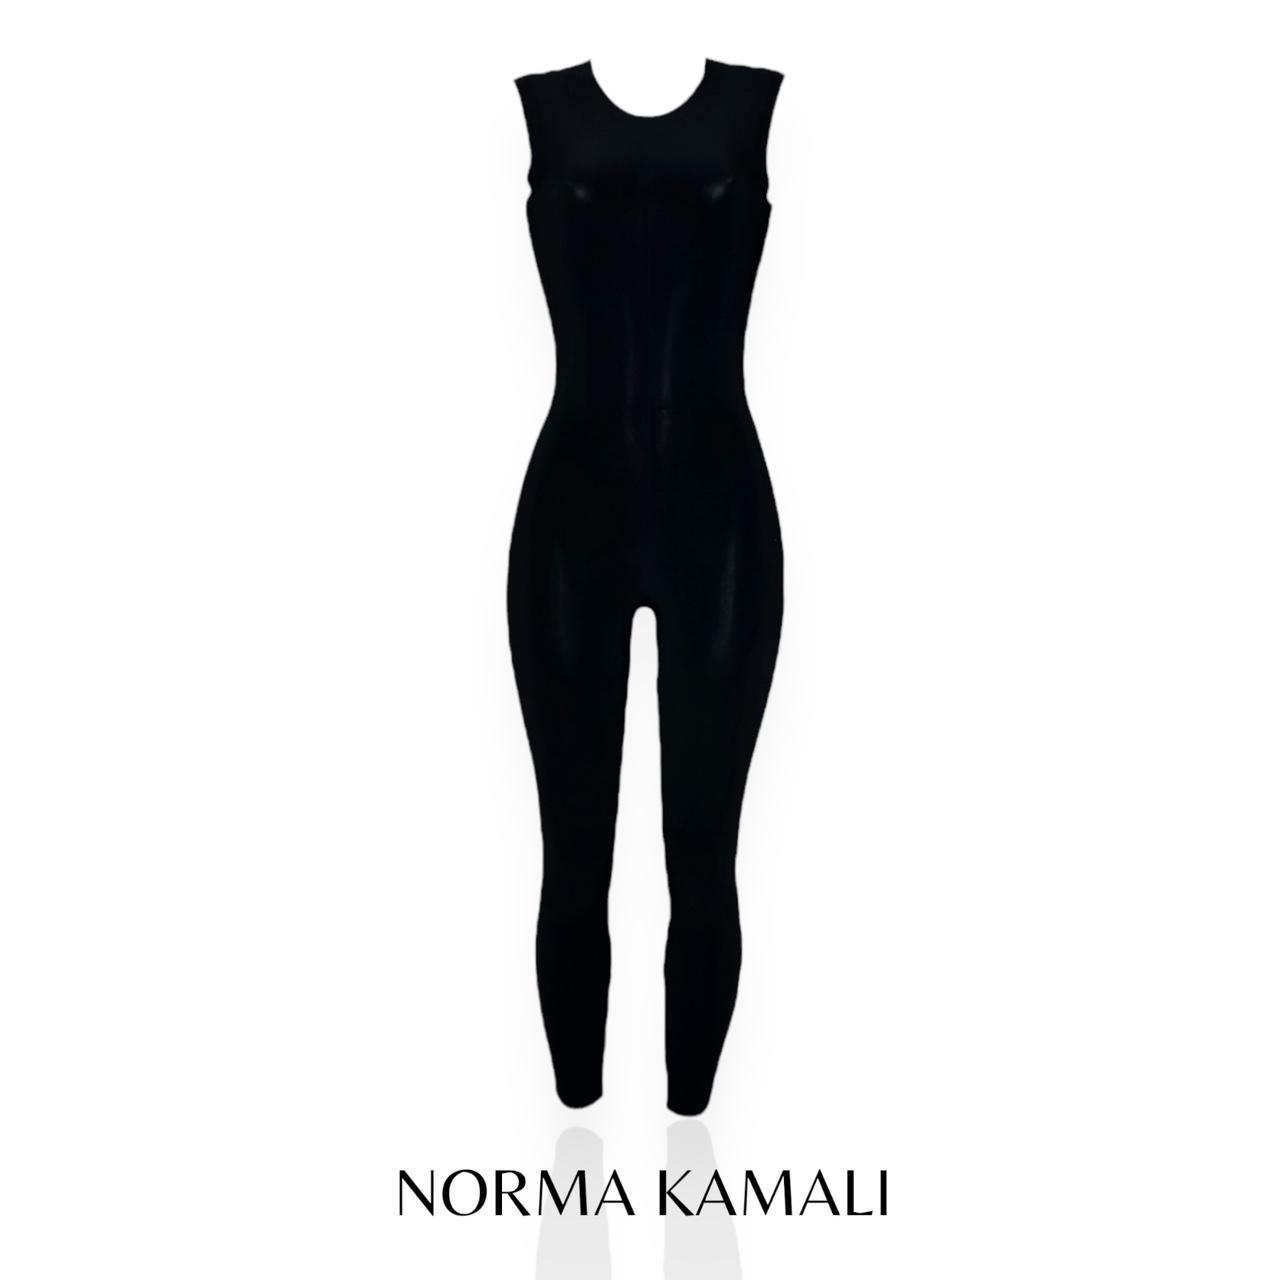 NORMA KAMALI Sleeveless Catsuit, Black, XS - New - Depop